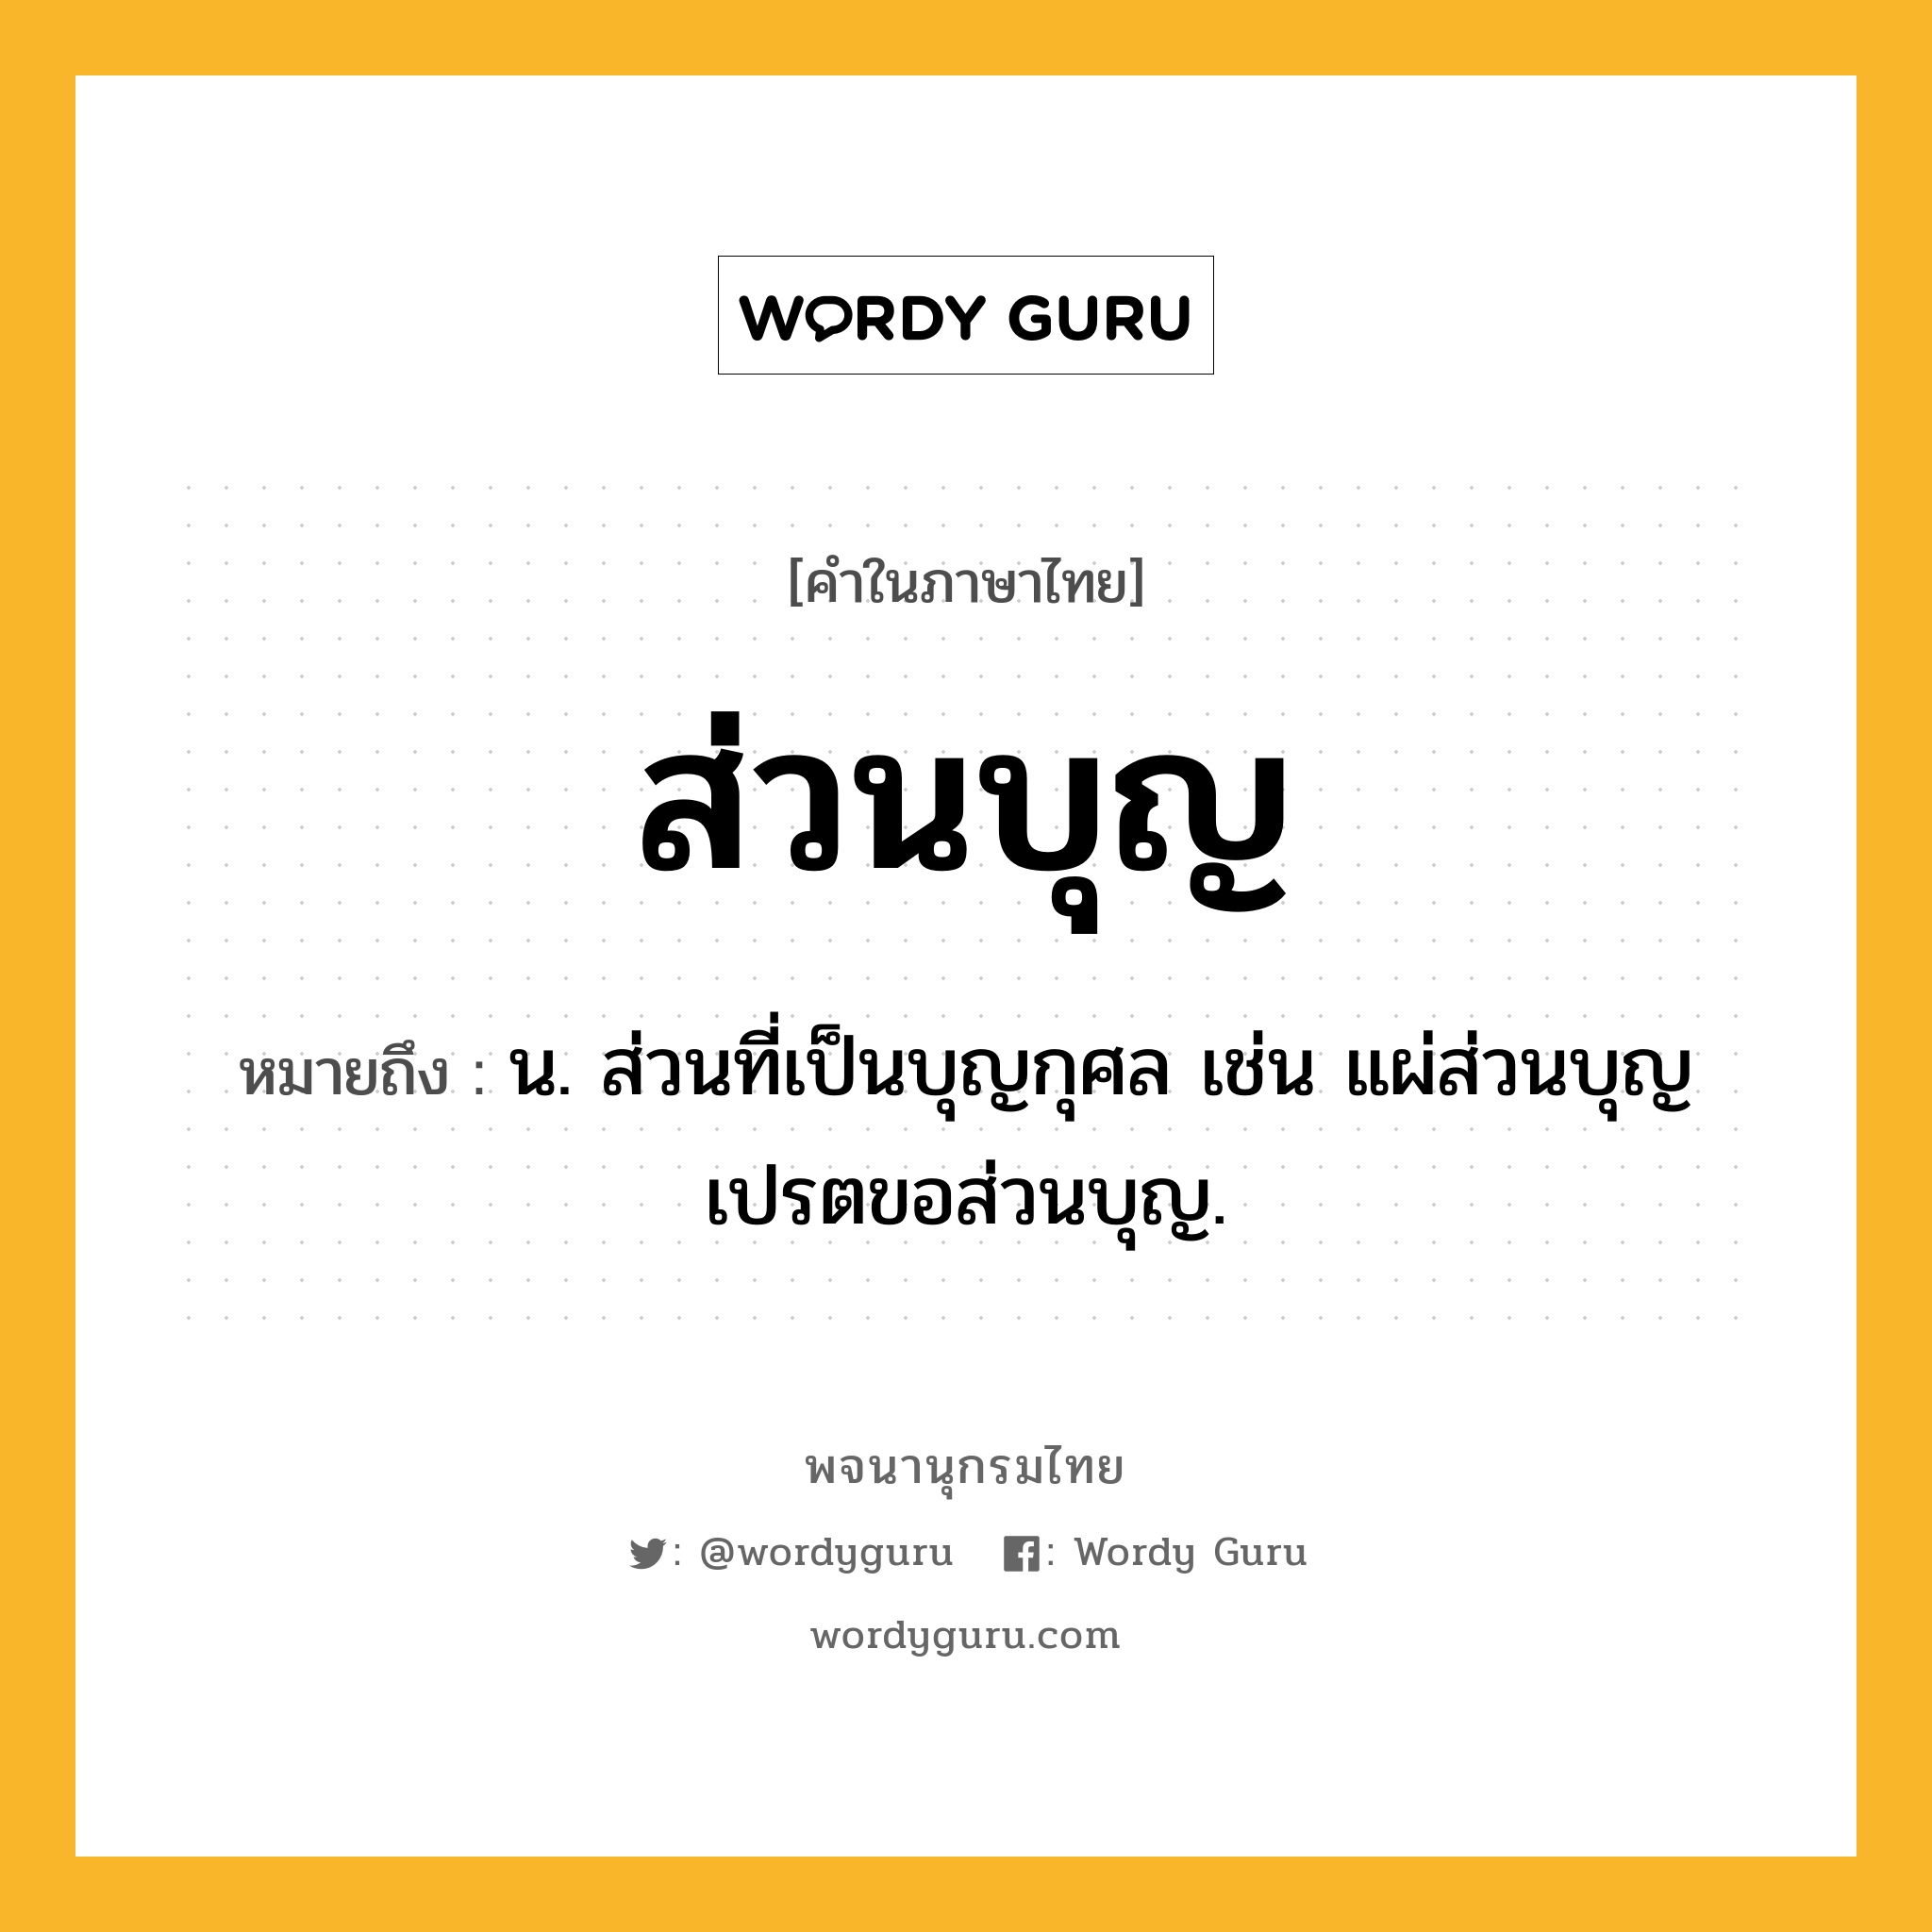 ส่วนบุญ ความหมาย หมายถึงอะไร?, คำในภาษาไทย ส่วนบุญ หมายถึง น. ส่วนที่เป็นบุญกุศล เช่น แผ่ส่วนบุญ เปรตขอส่วนบุญ.